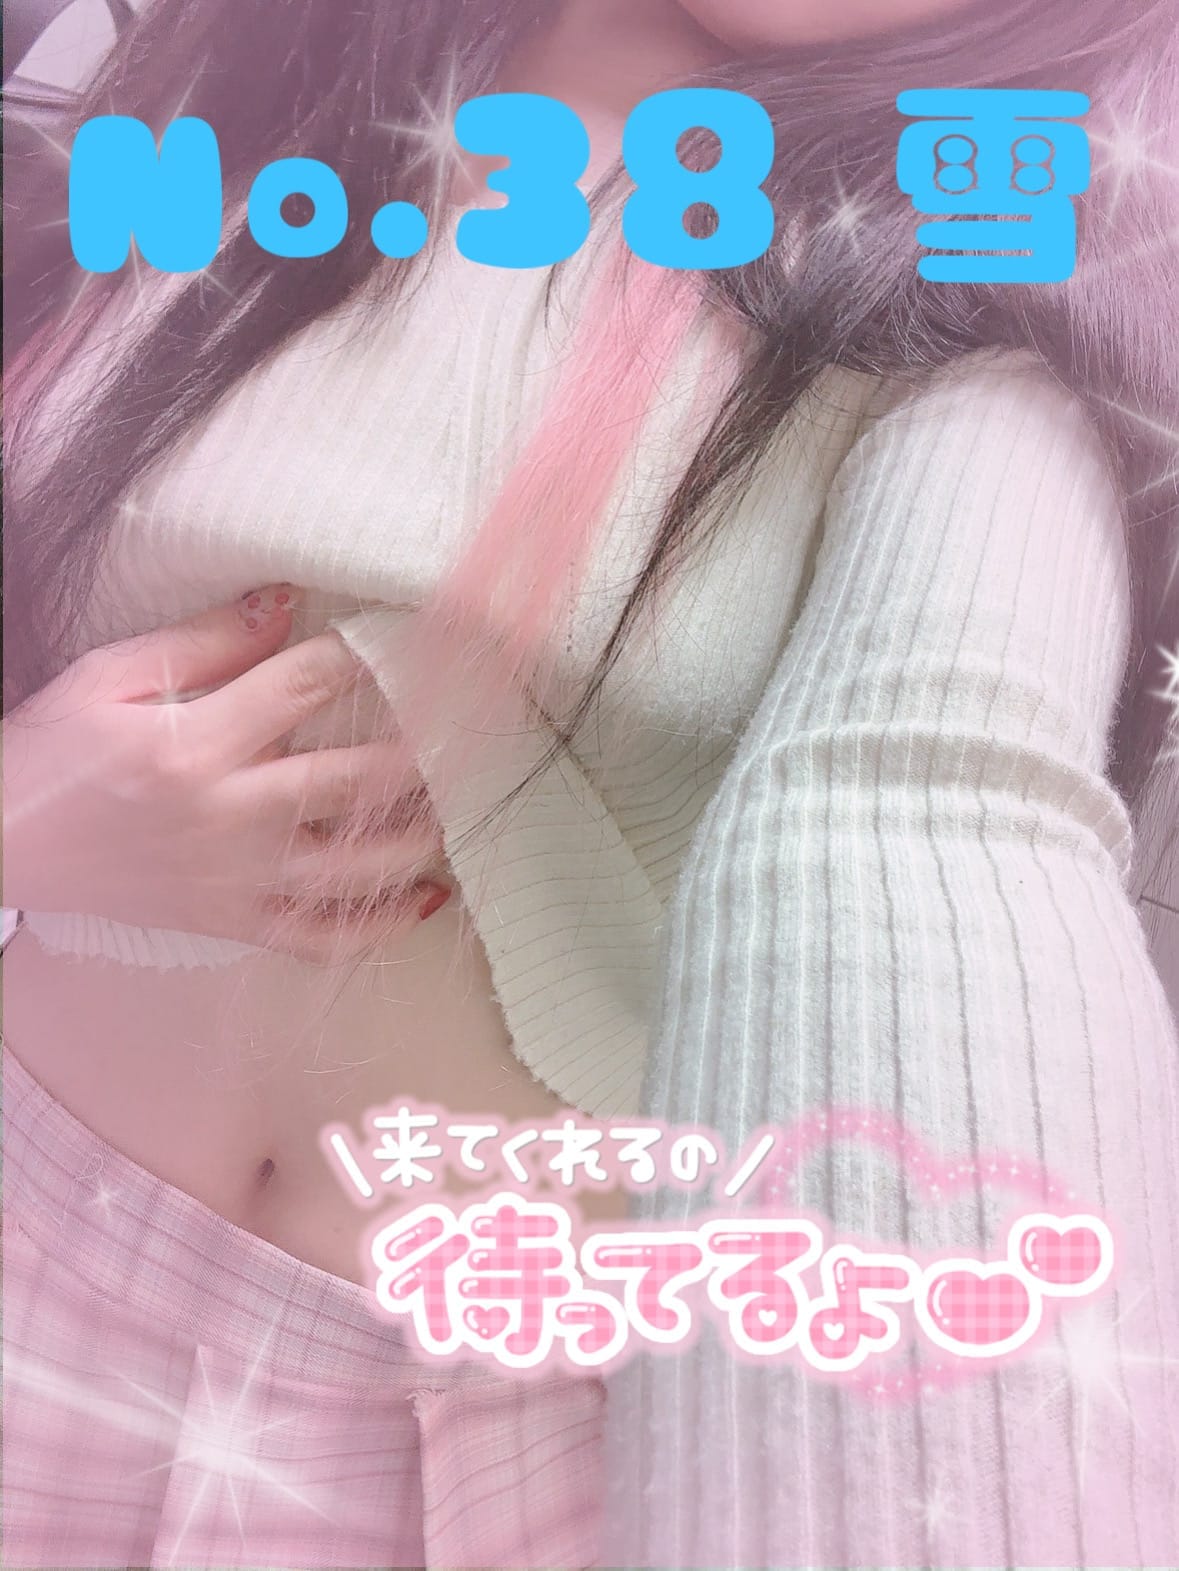 「ねこちゃん♡♡♡」05/13(月) 17:29 | No.38雪の写メ